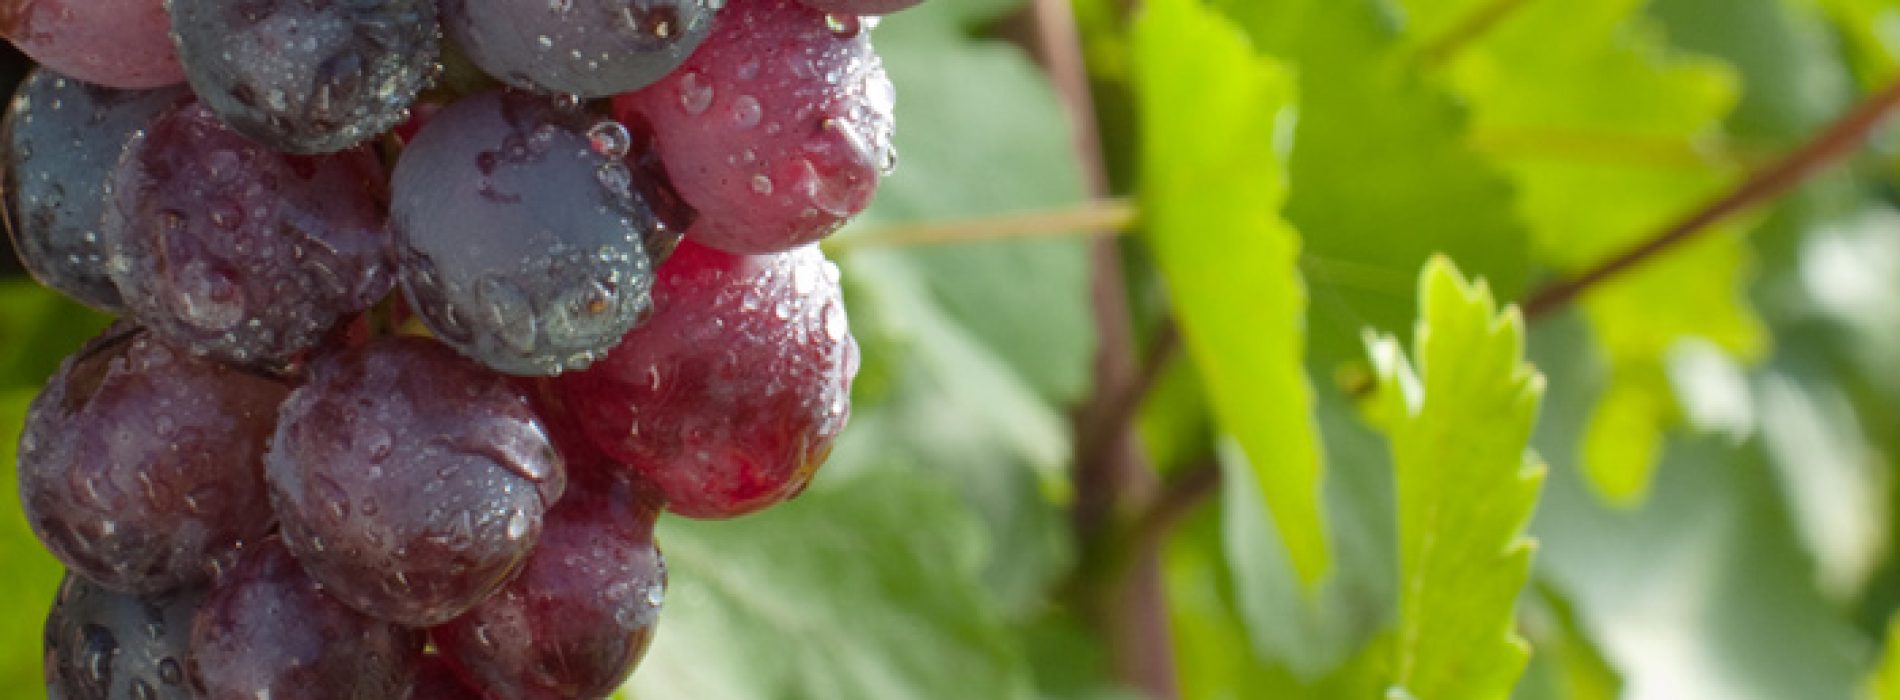 Natuurlijke plantenstof in druiven beschermt de gezondheid van de hersenen, blijkt uit onderzoek